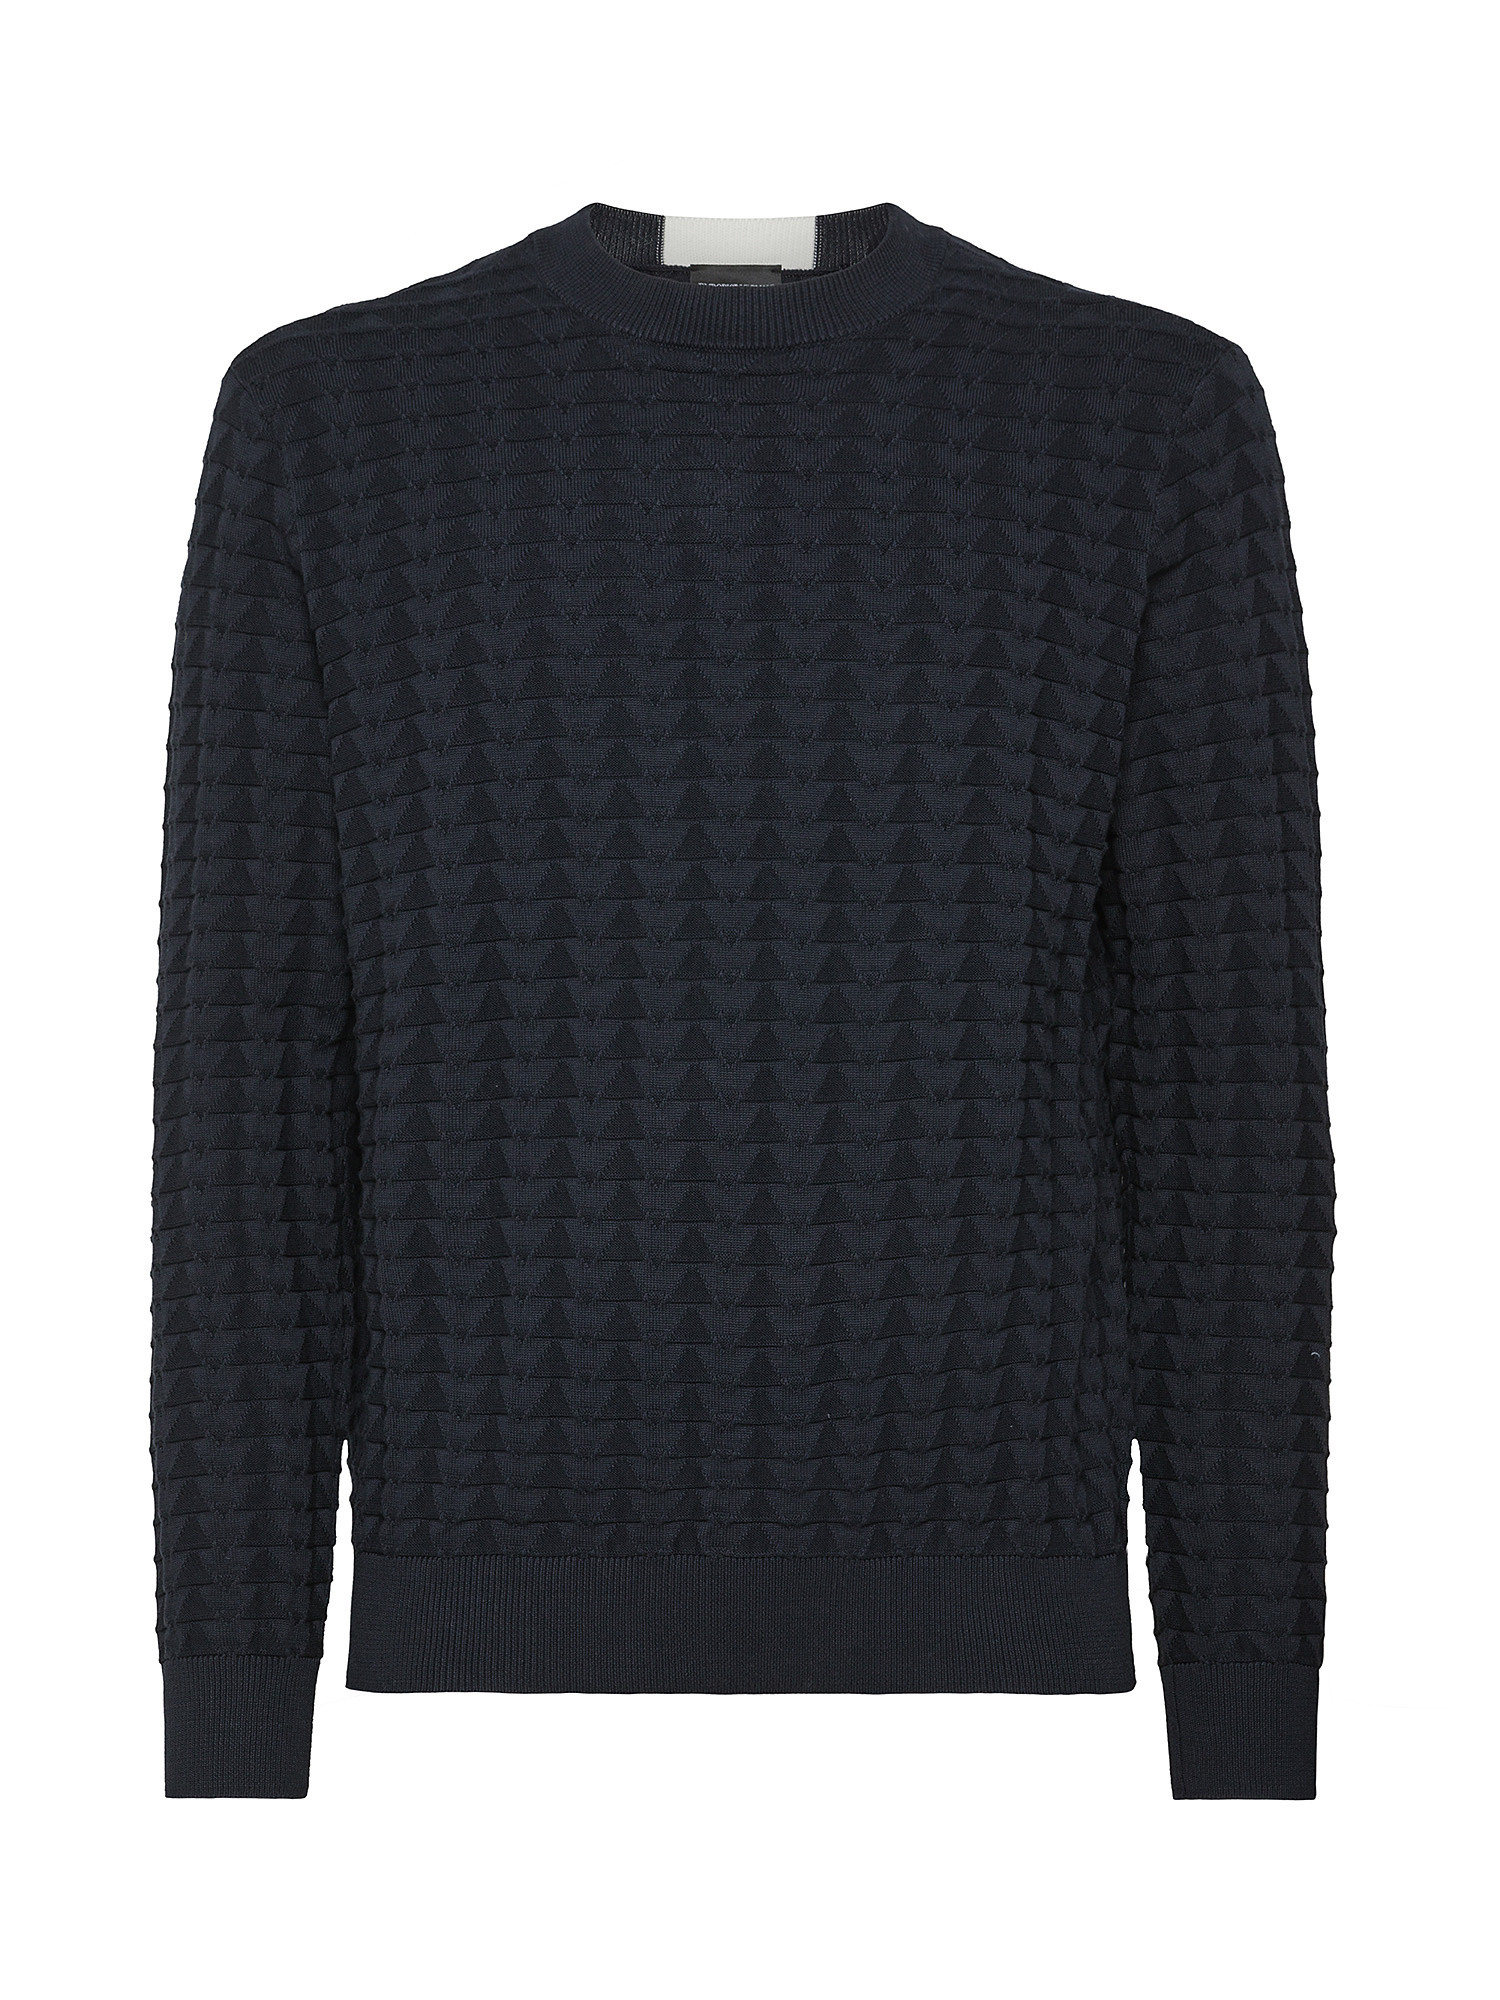 Emporio Armani - Pullover in cotone lavorato a maglia, Dark Blue, large image number 0